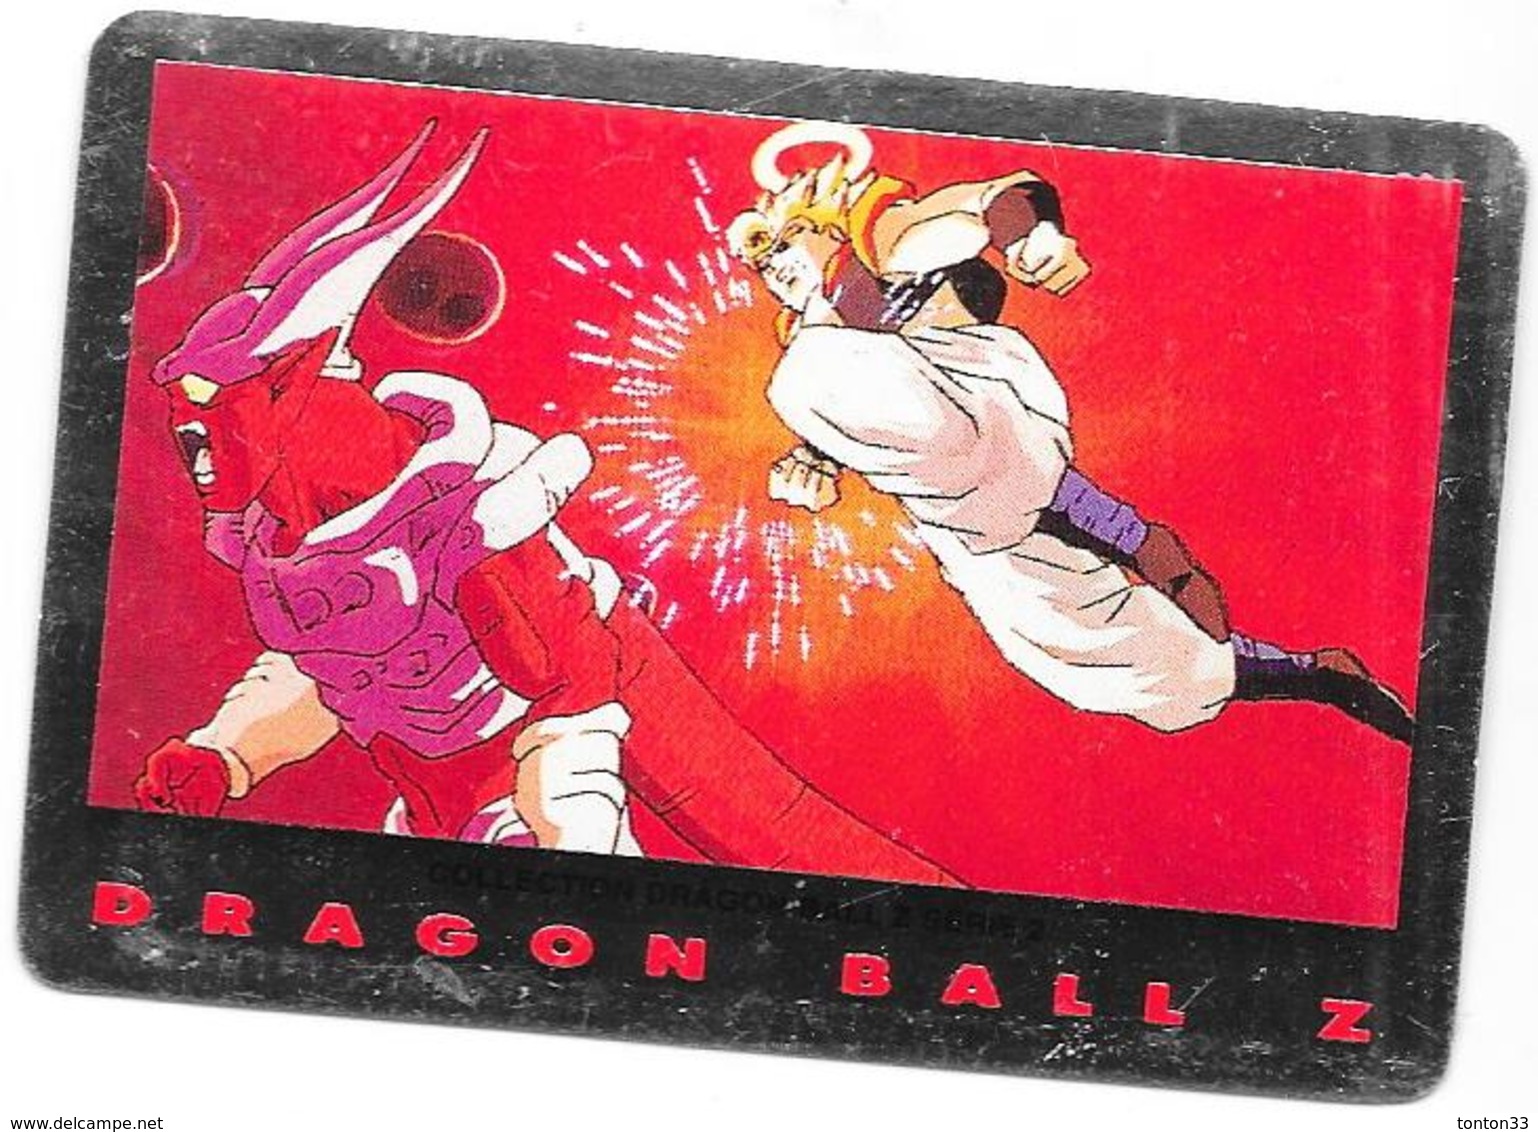 LOT de 86 Cartes DRAGONBALL Z - collection dragon ball serie 2 1989 -